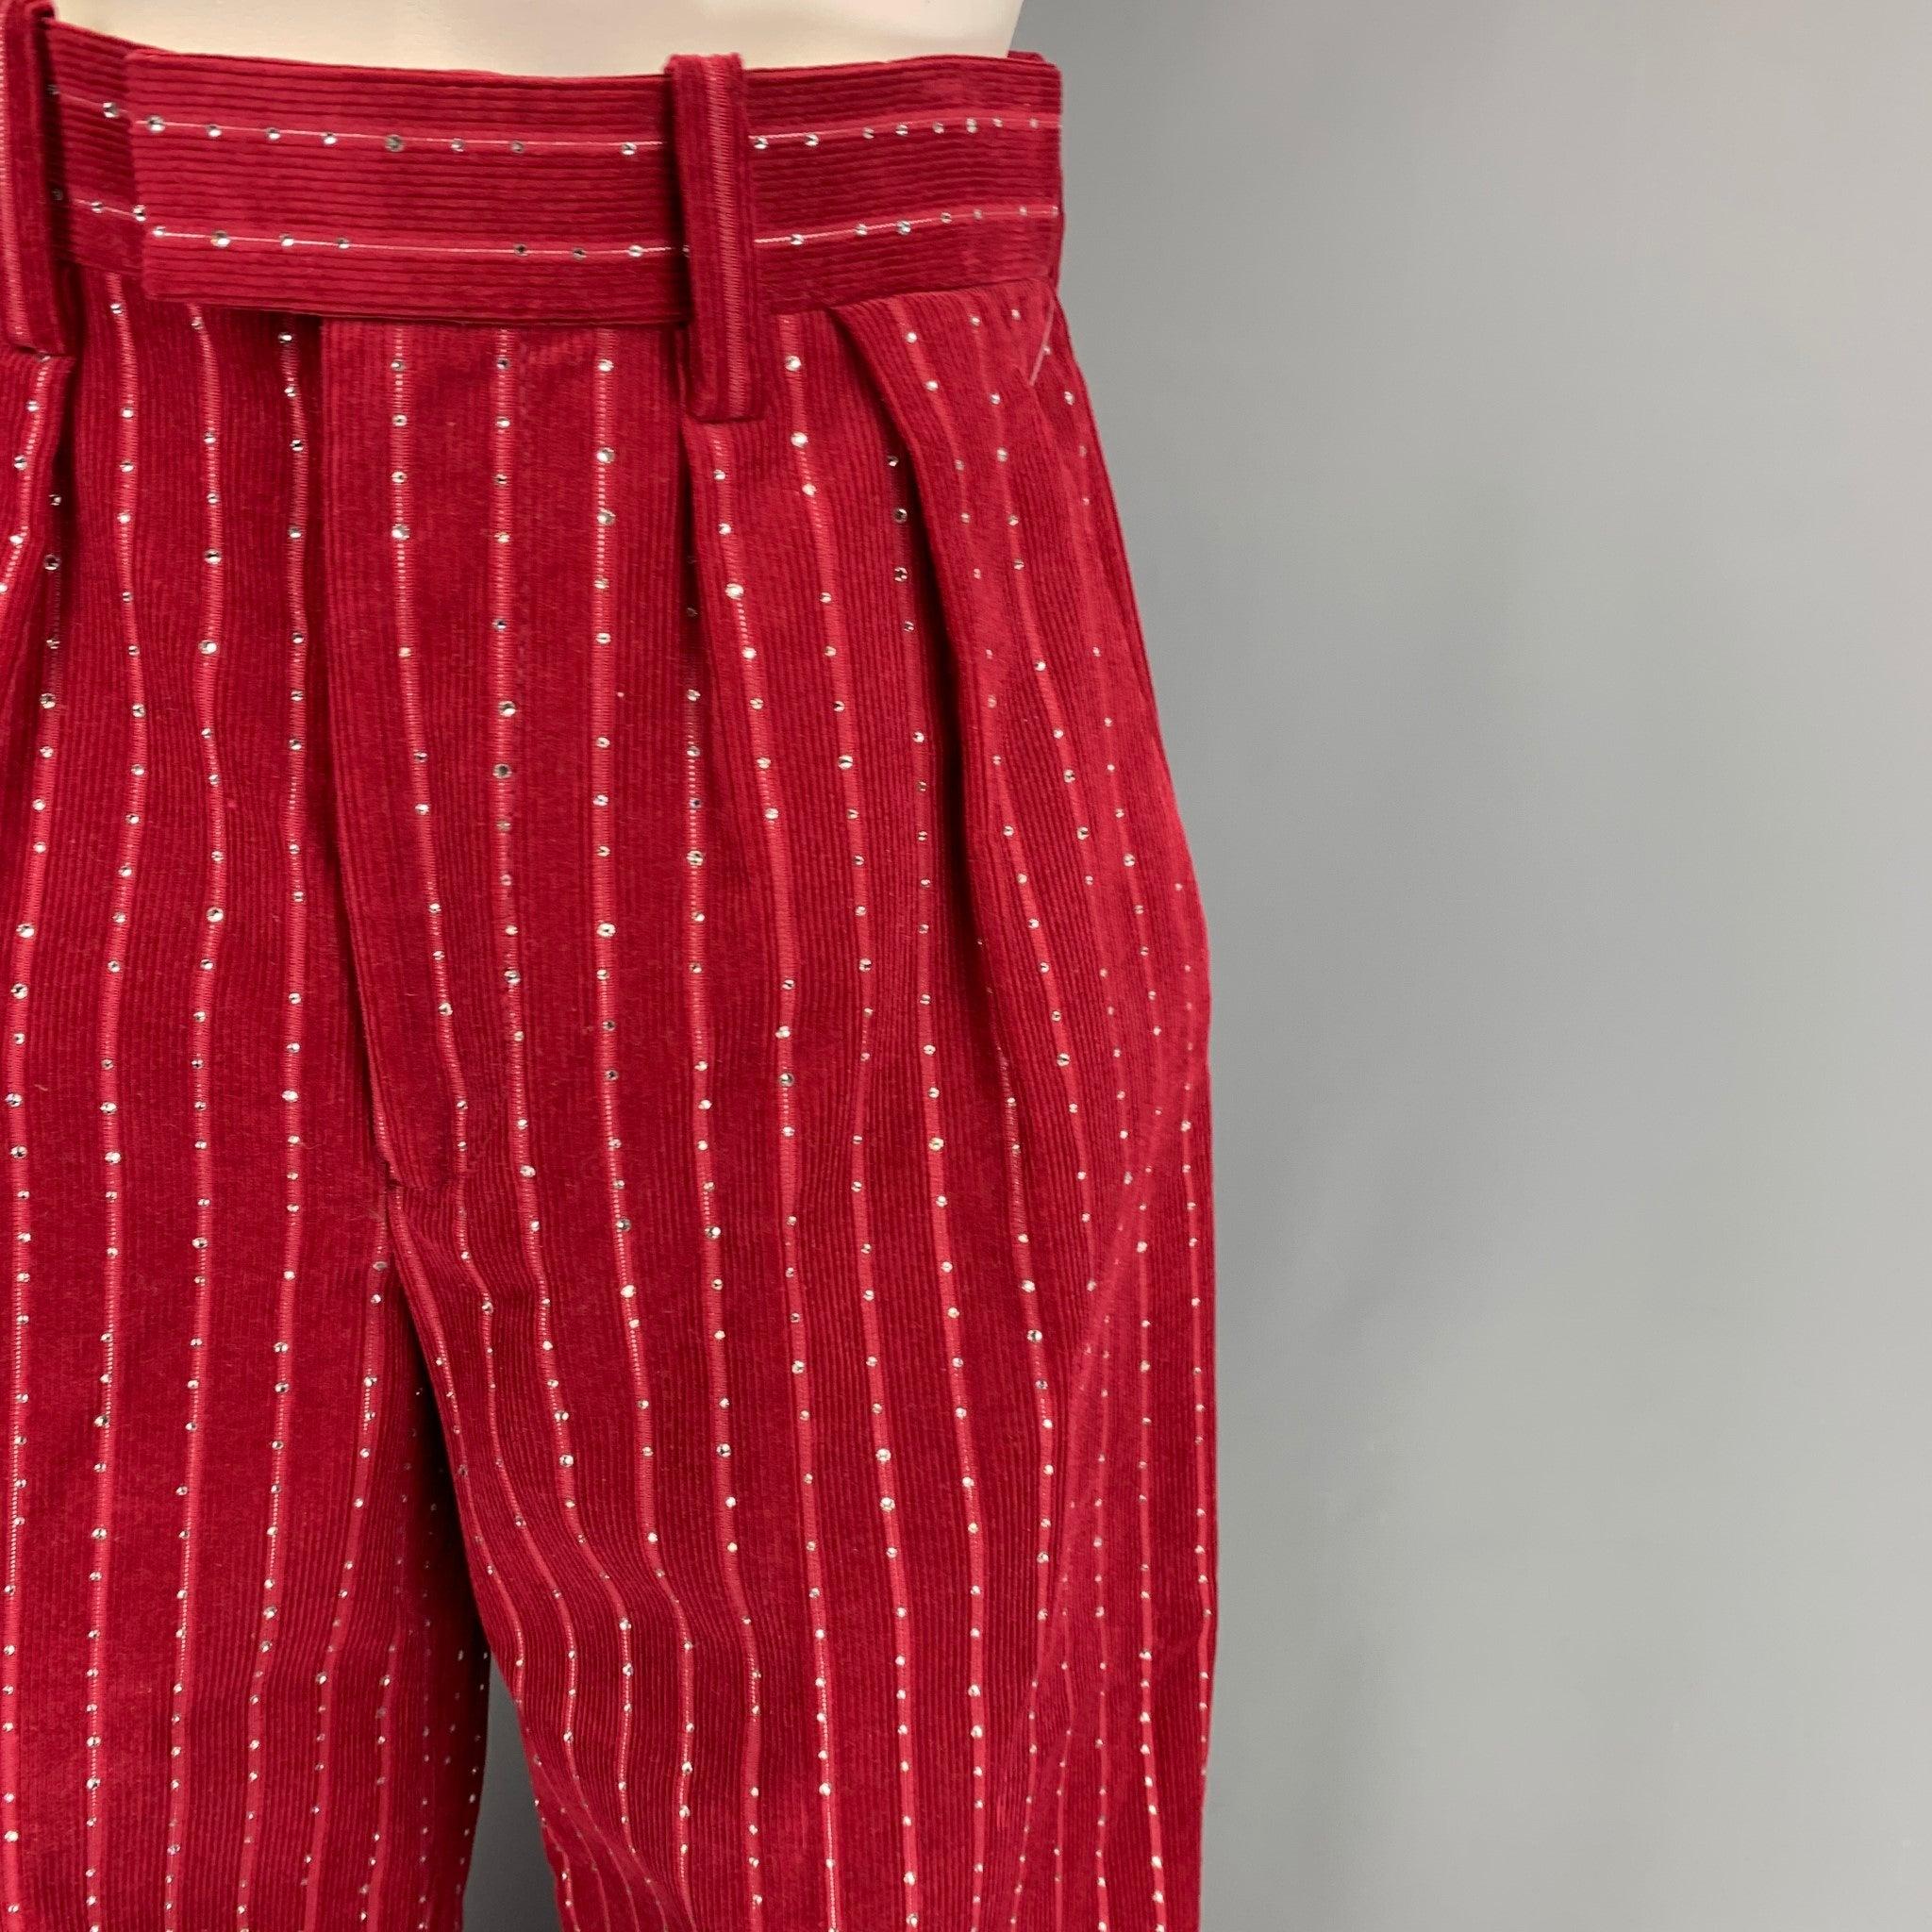 Le pantalon MARC JACOBS RUNWAY Spring 2020 se présente dans un velours côtelé bordeaux en coton / lurex avec des ornements en cristaux sur l'ensemble de la jambe, une jambe large, des plis et une fermeture zippée à la braguette.
Excellent
Etat